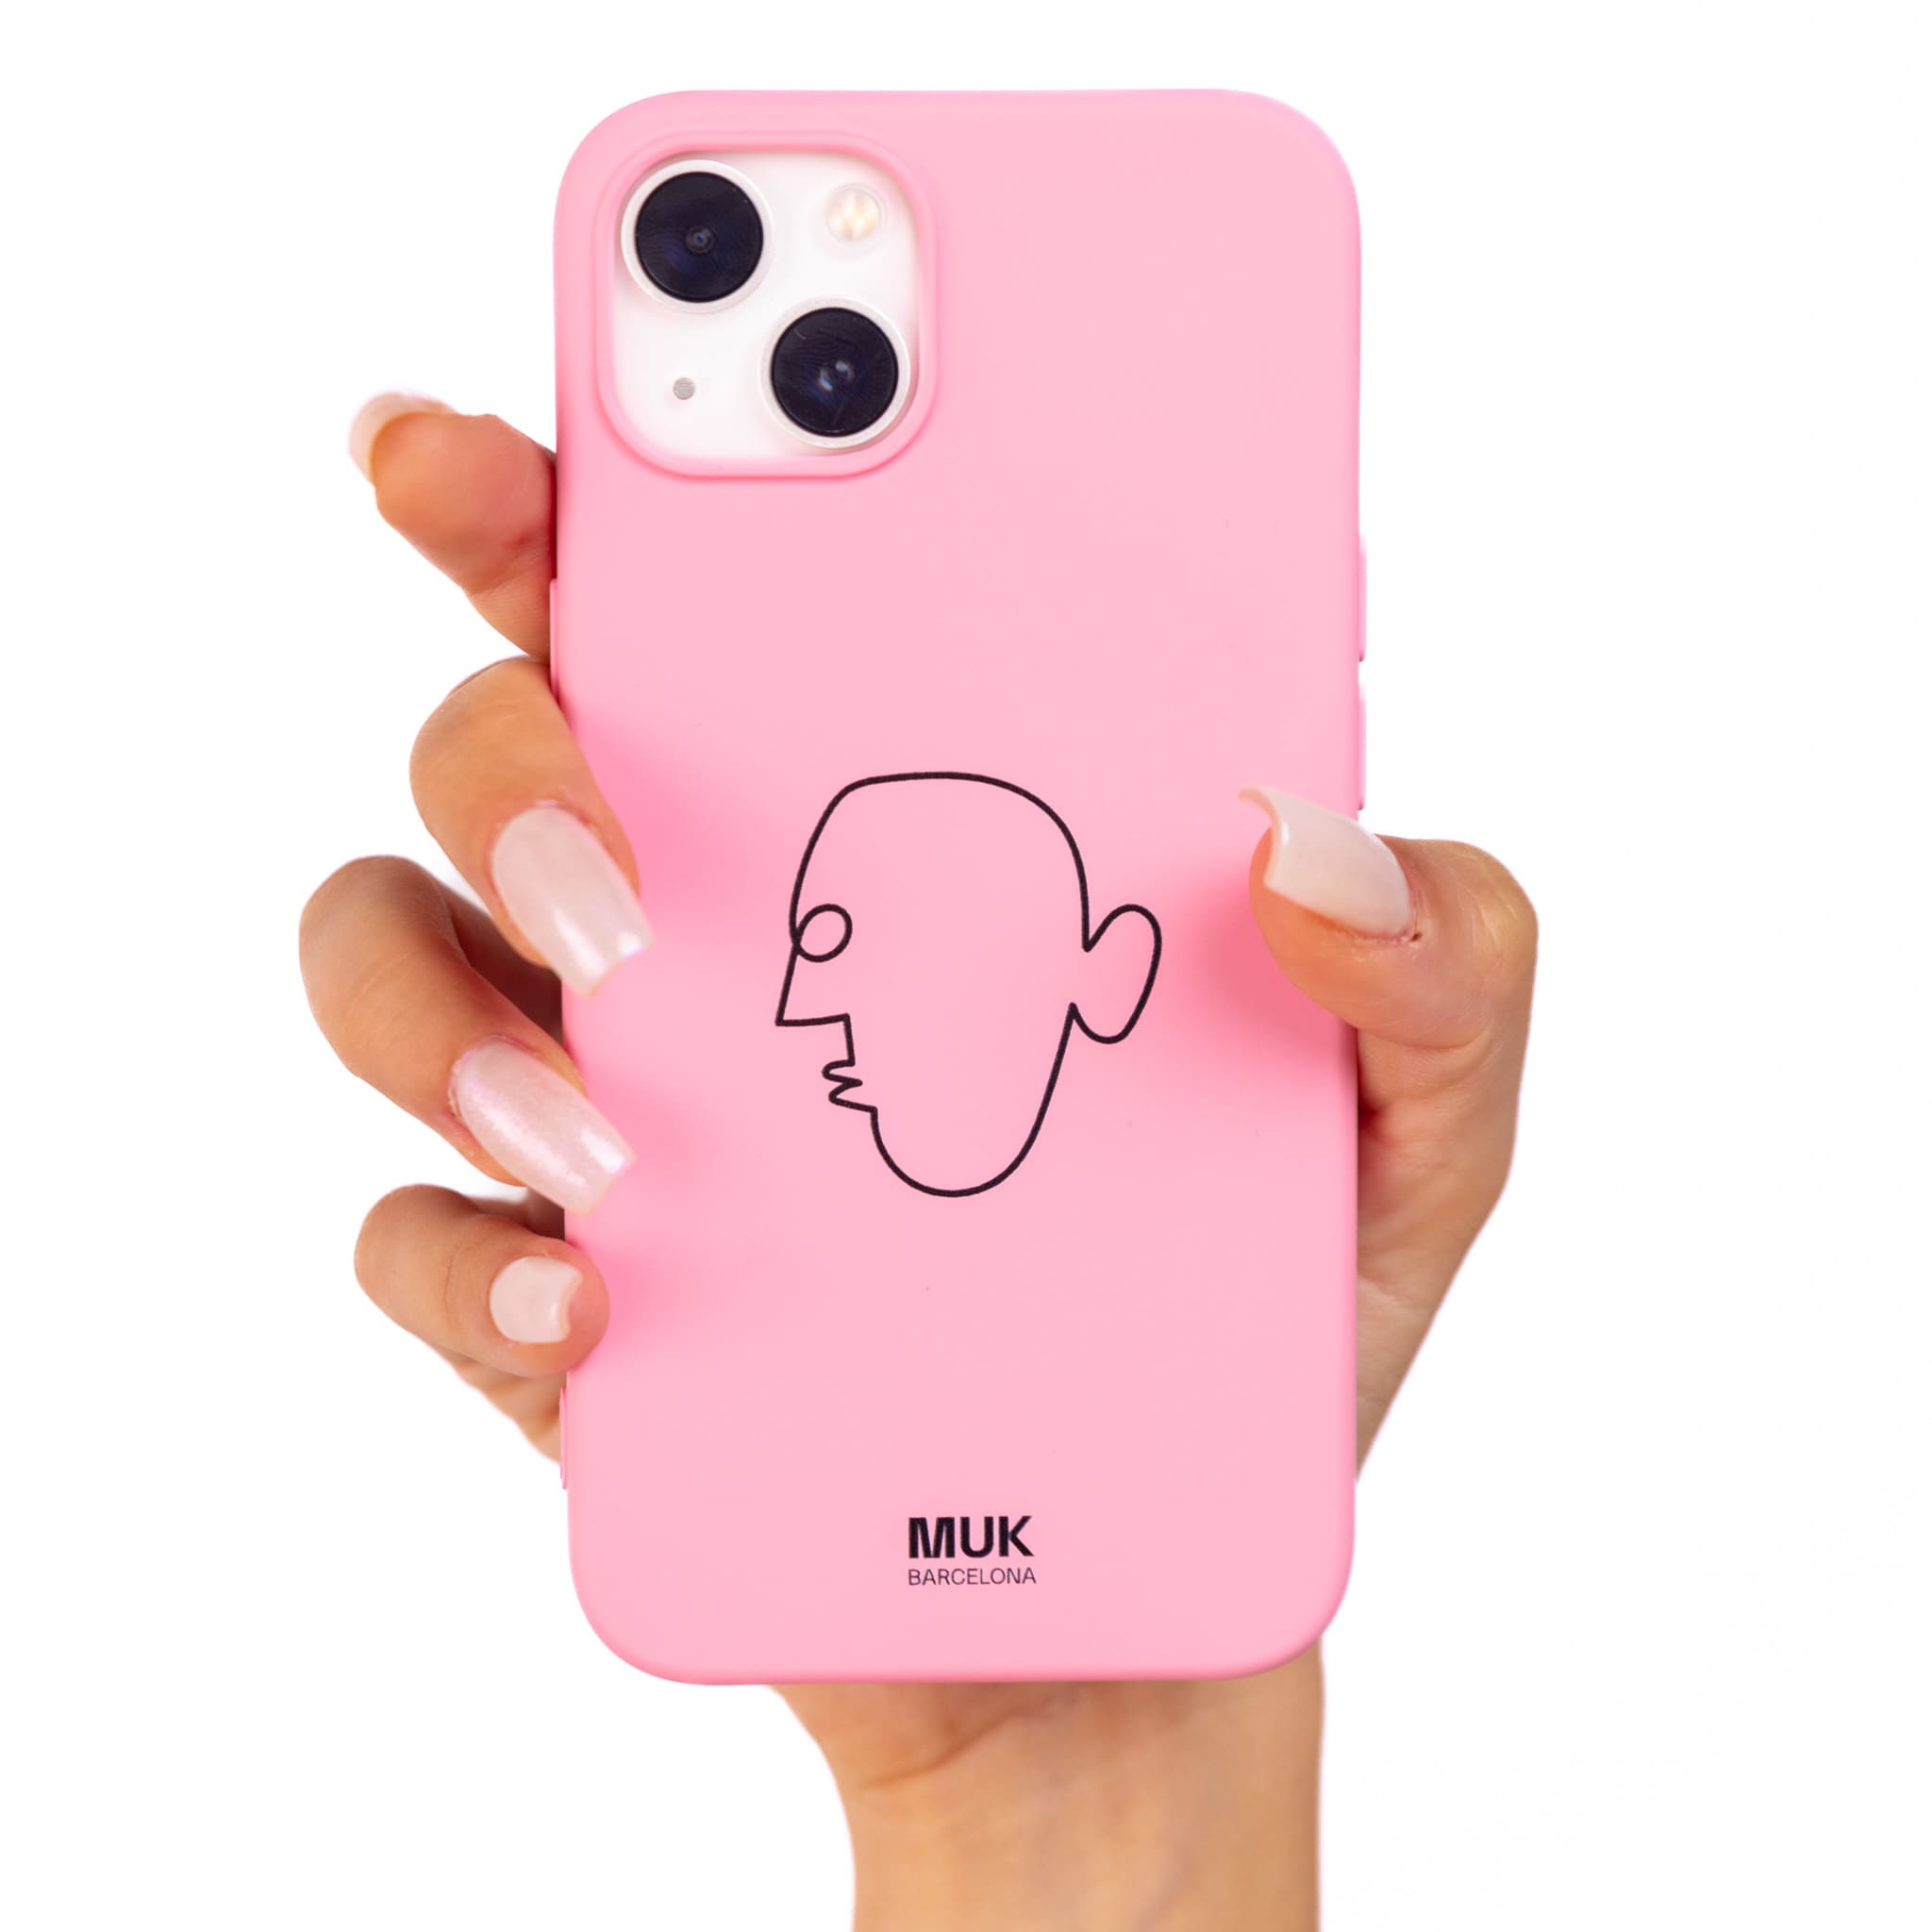 Funda de móvil TPU rosa con diseño de cara abstracta con un 6 y un 4.
